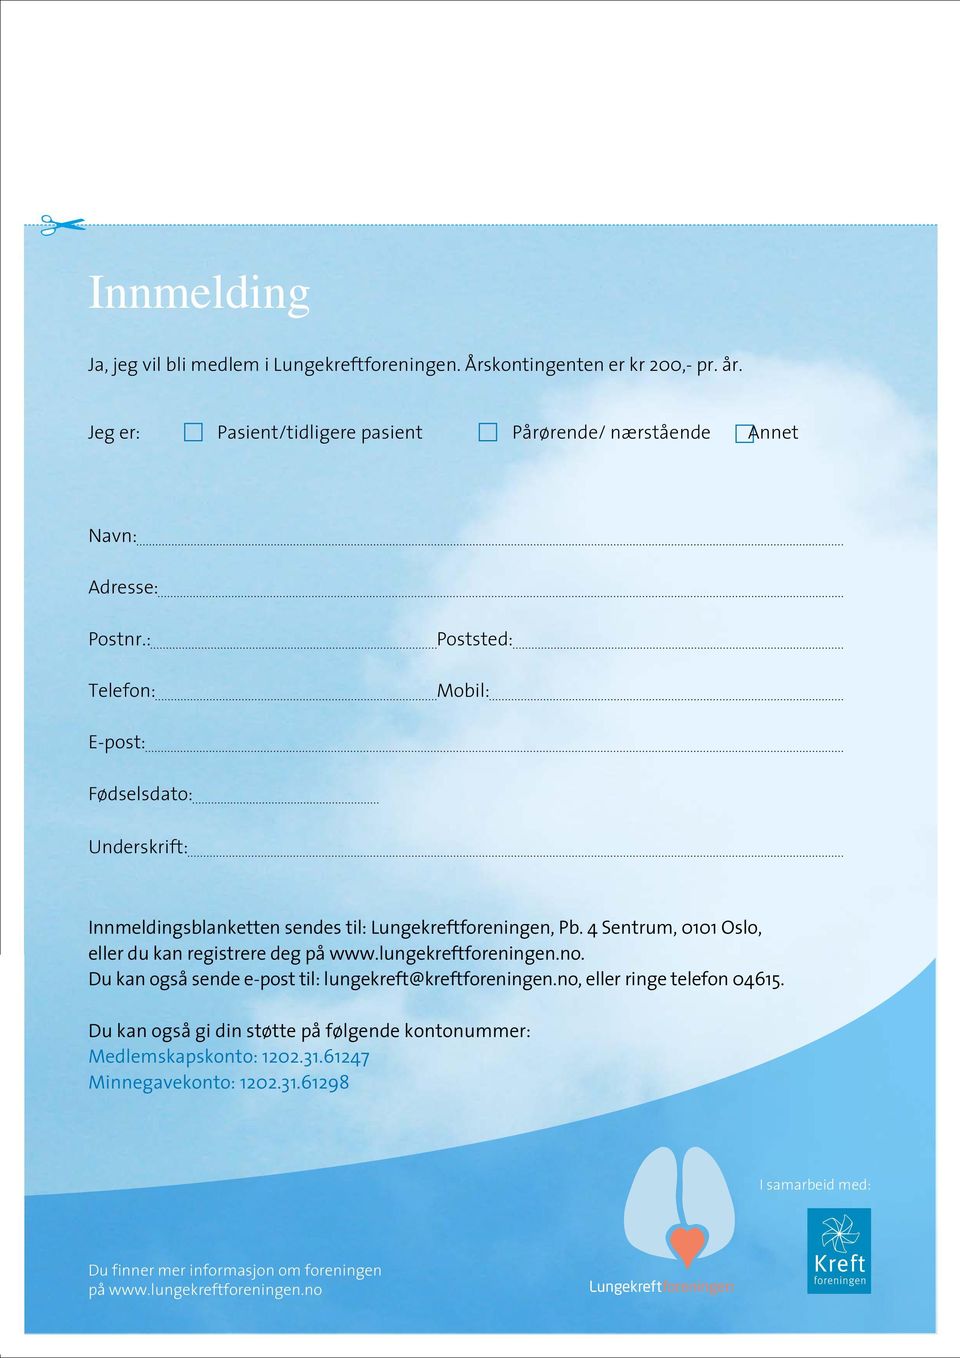 4 Sentrum, 0101 Oslo, eller du kan registrere deg på www.lungekreftforeningen.no. Du kan også sende e-post til: lungekreft@kreftforeningen.